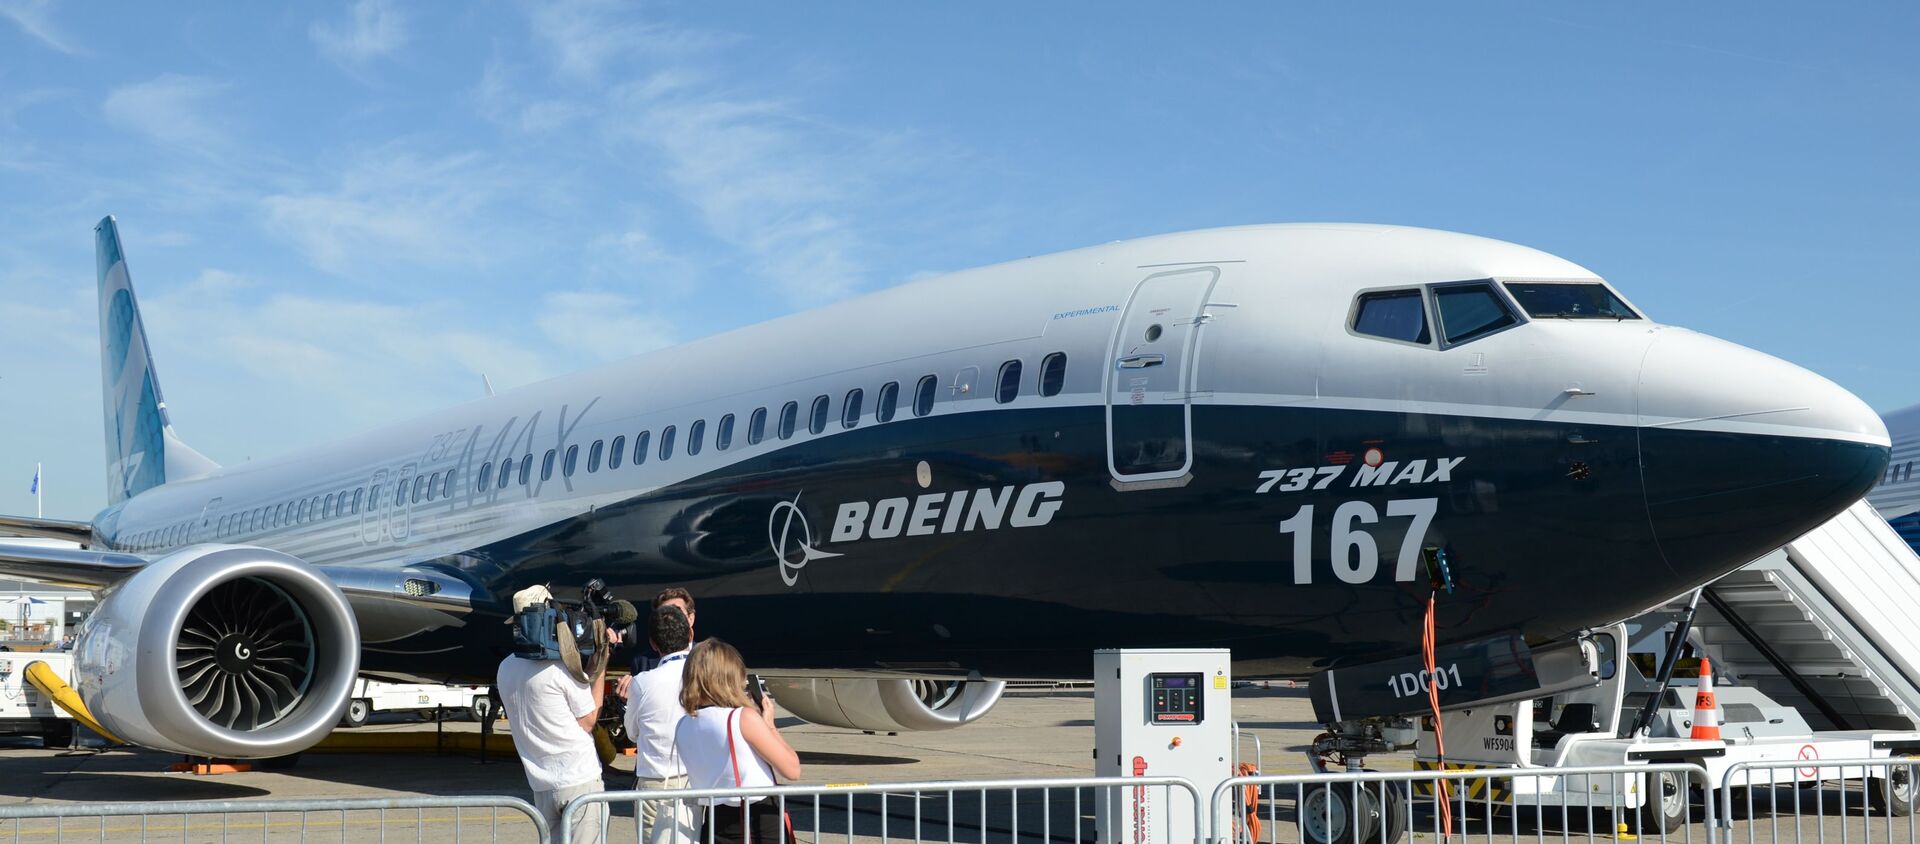 Самолет Boeing-737 MAX 167 на Международном авиасалоне Ле Бурже-2017 во Франции - Sputnik Тоҷикистон, 1920, 15.02.2021